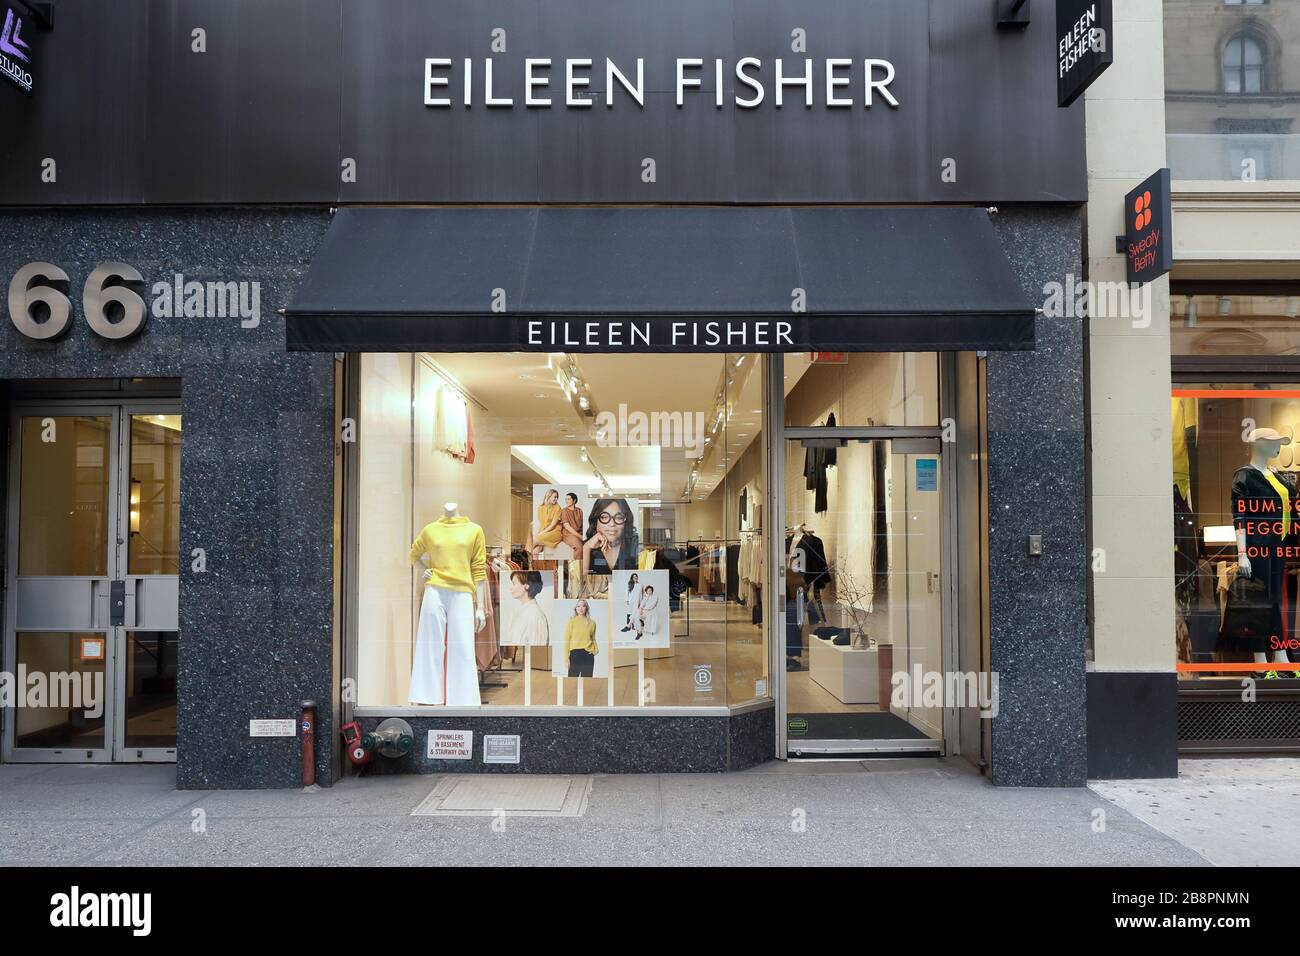 Eileen Fisher, 166 Fifth Avenue, Nueva York. Foto del escaparate de Nueva York de una tienda de ropa de diseño en el distrito Flatiron de Manhattan. Foto de stock